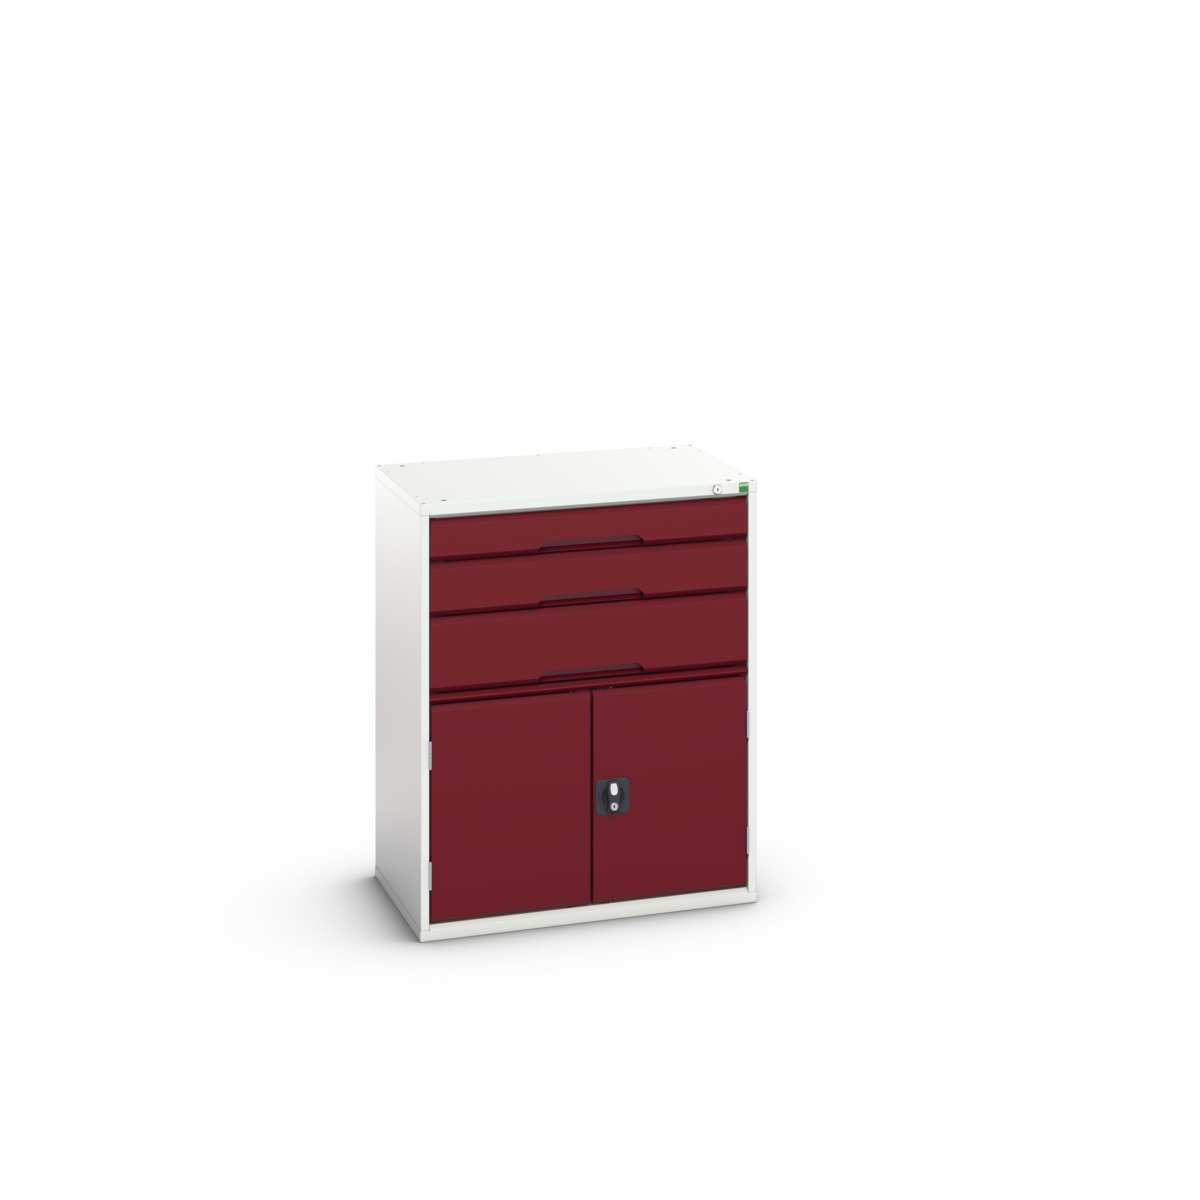 16925161.24 - verso drawer-door cabinet